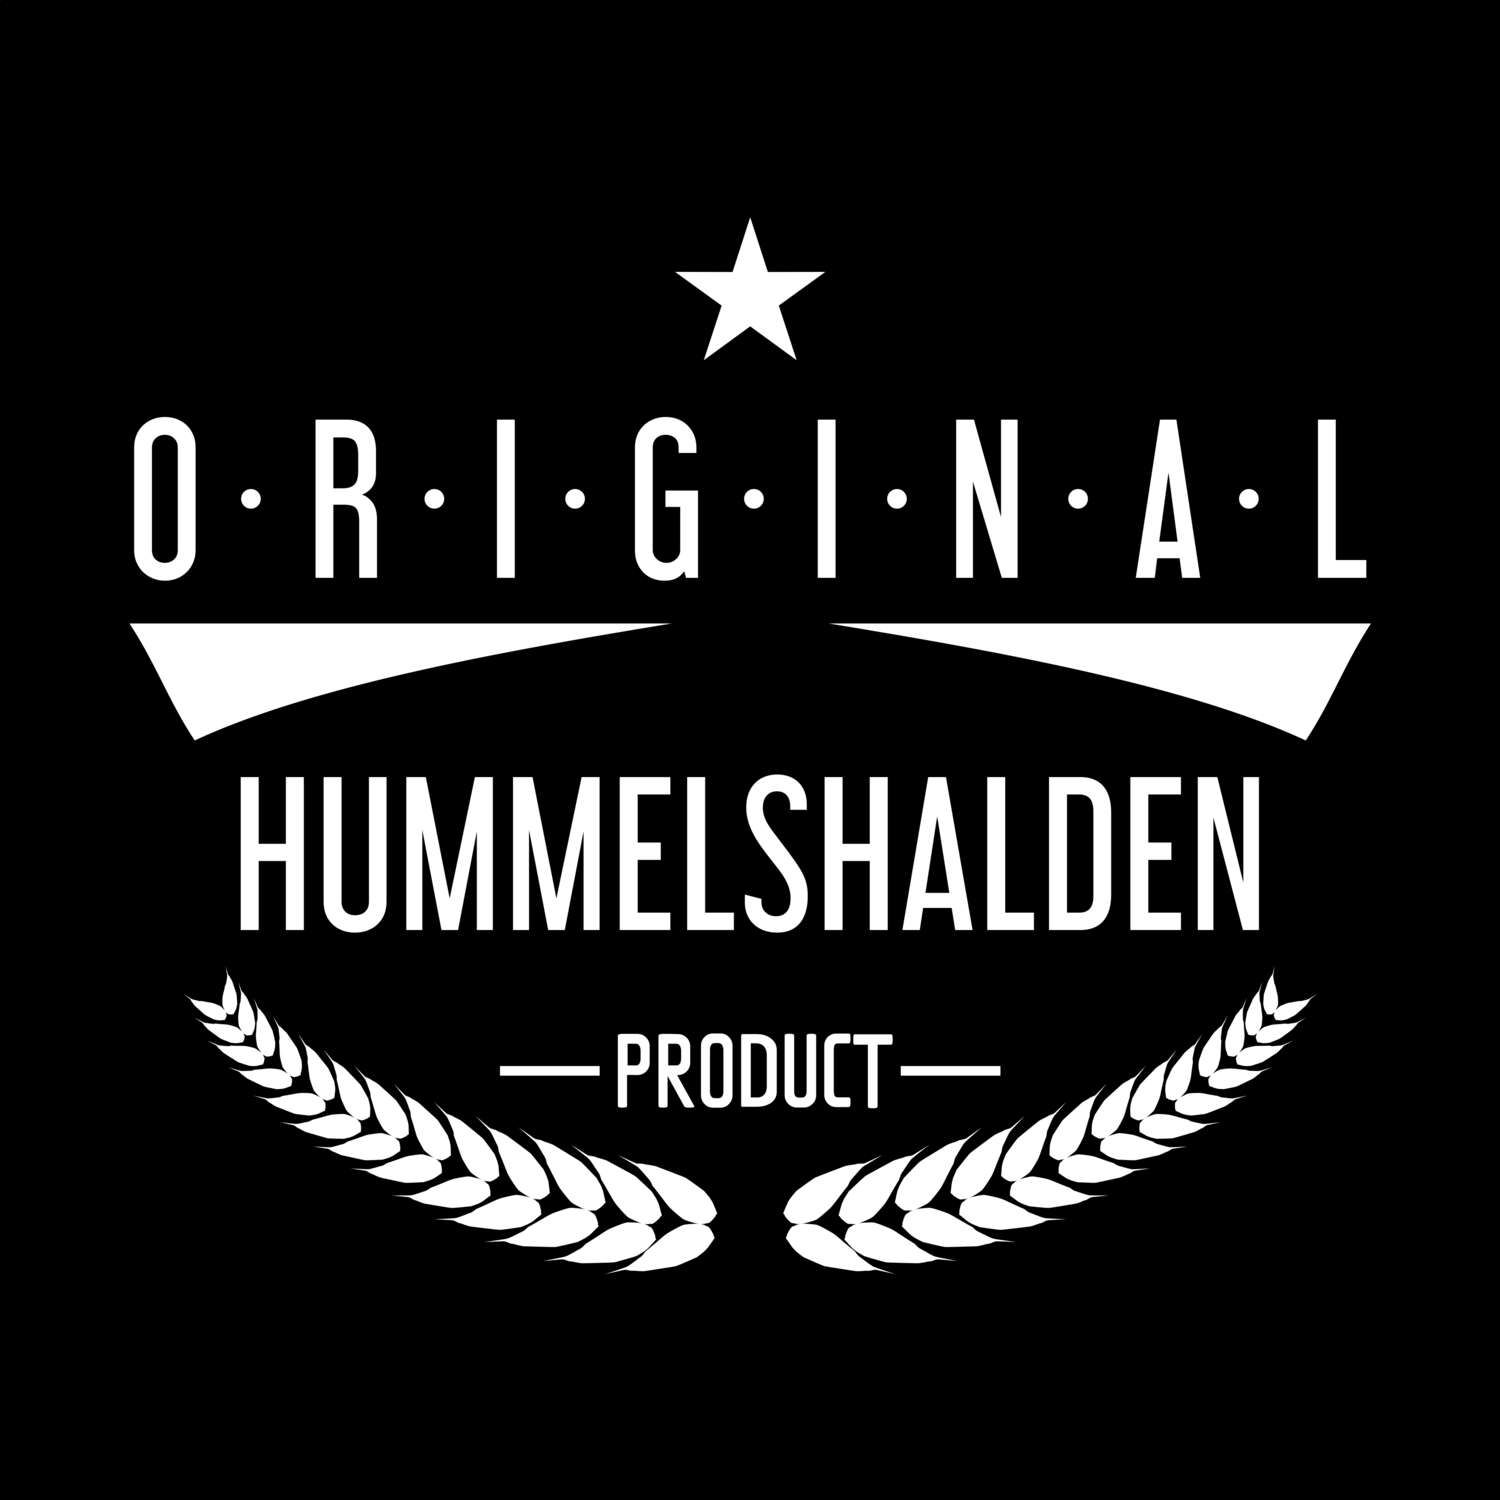 Hummelshalden T-Shirt »Original Product«